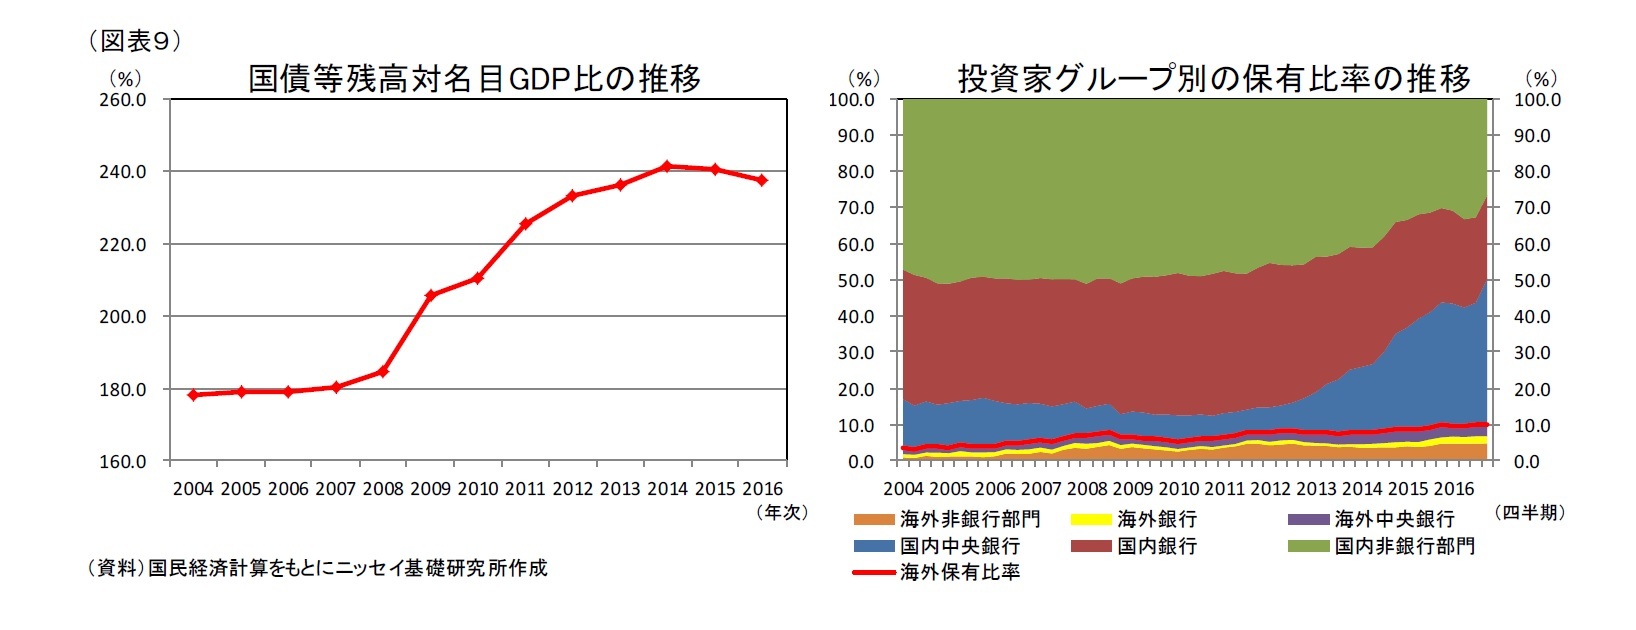 (図表９)国債等残高対名目GDP比の推移/投資家グループ別の保有比率の推移